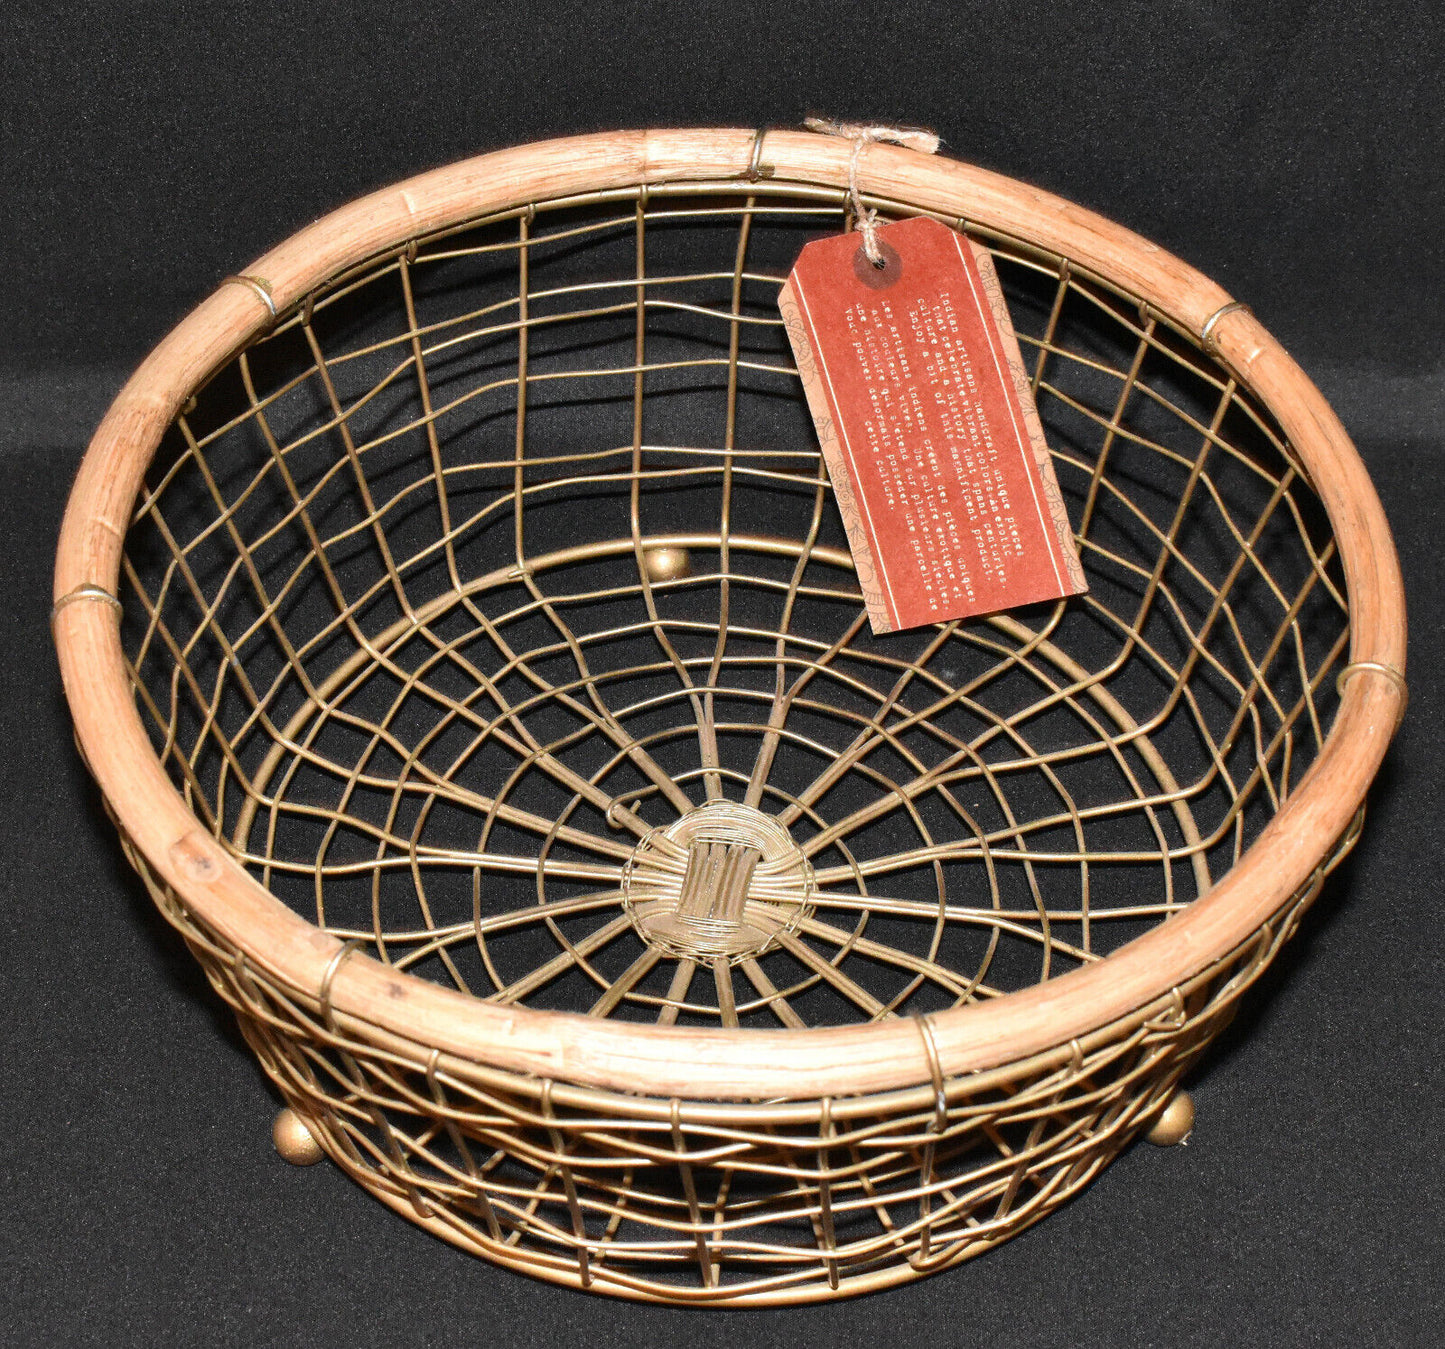 Vintage Handcrafted Basket Metal & Wood 10" Footed Basket Decorative Home Decor